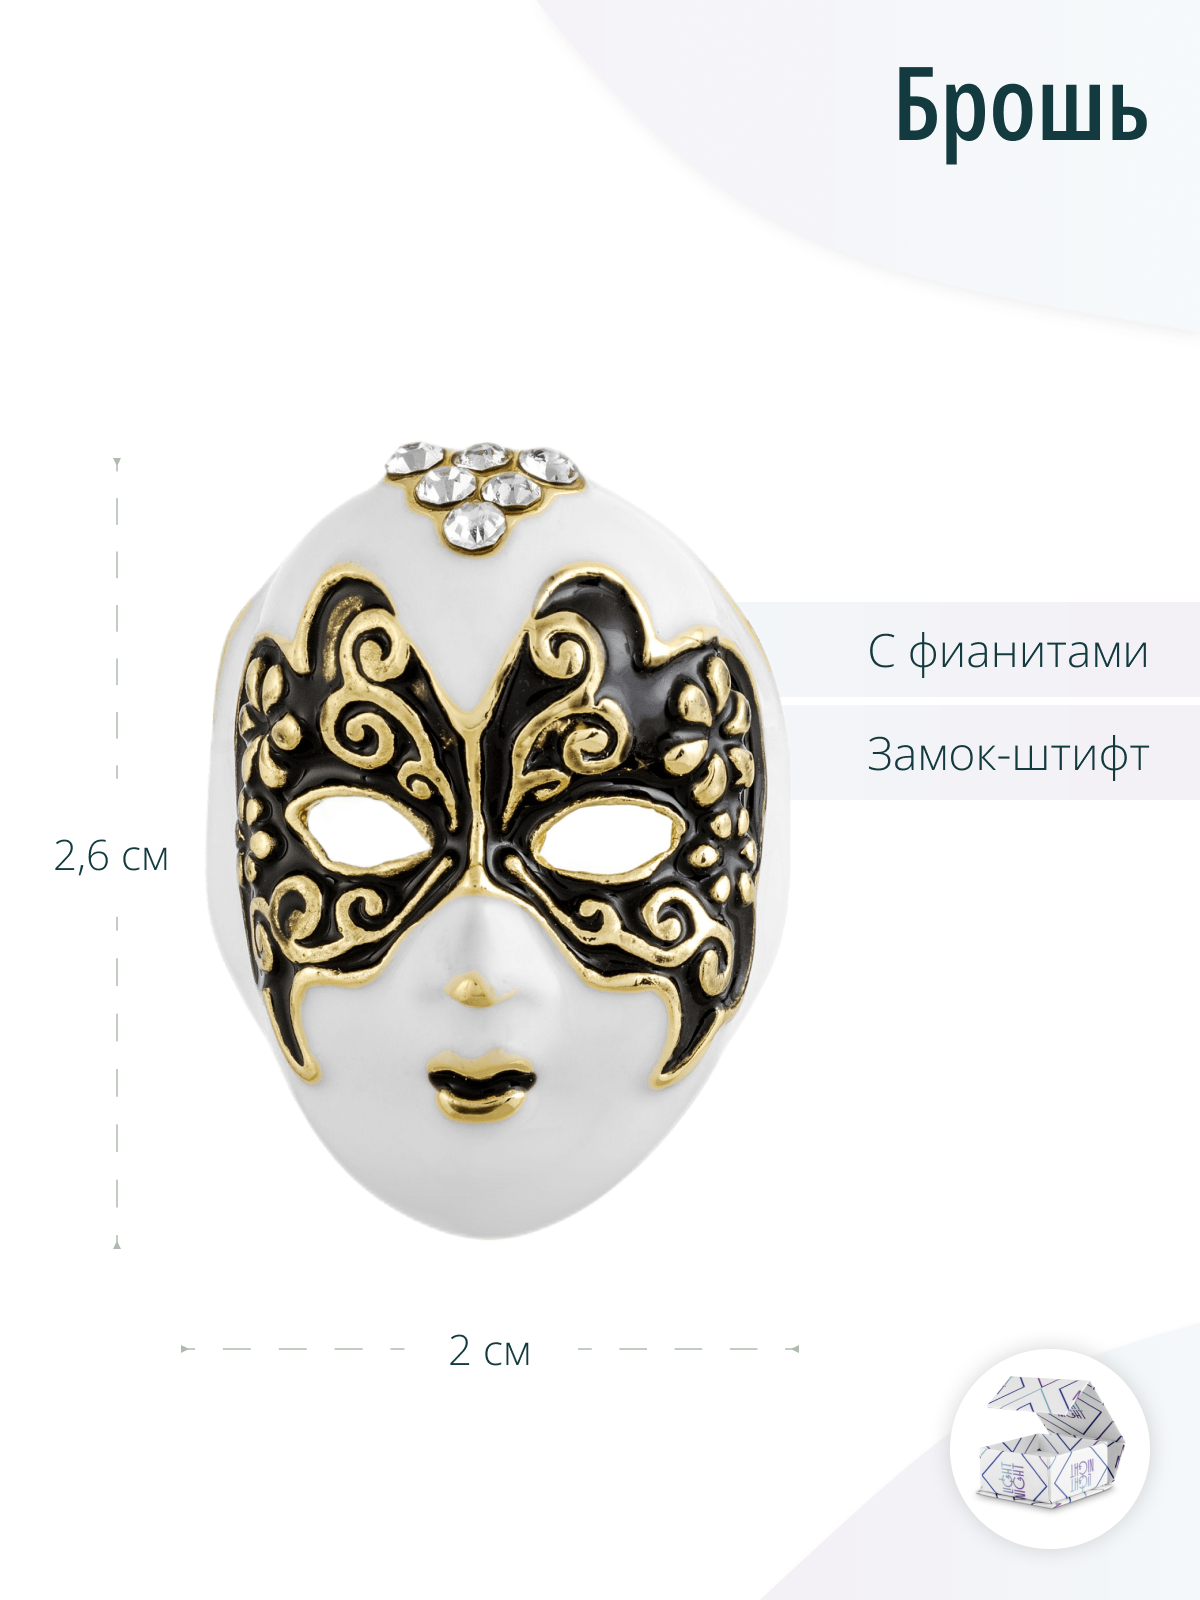 Стильная дизайнерская брошь Венецианская маска